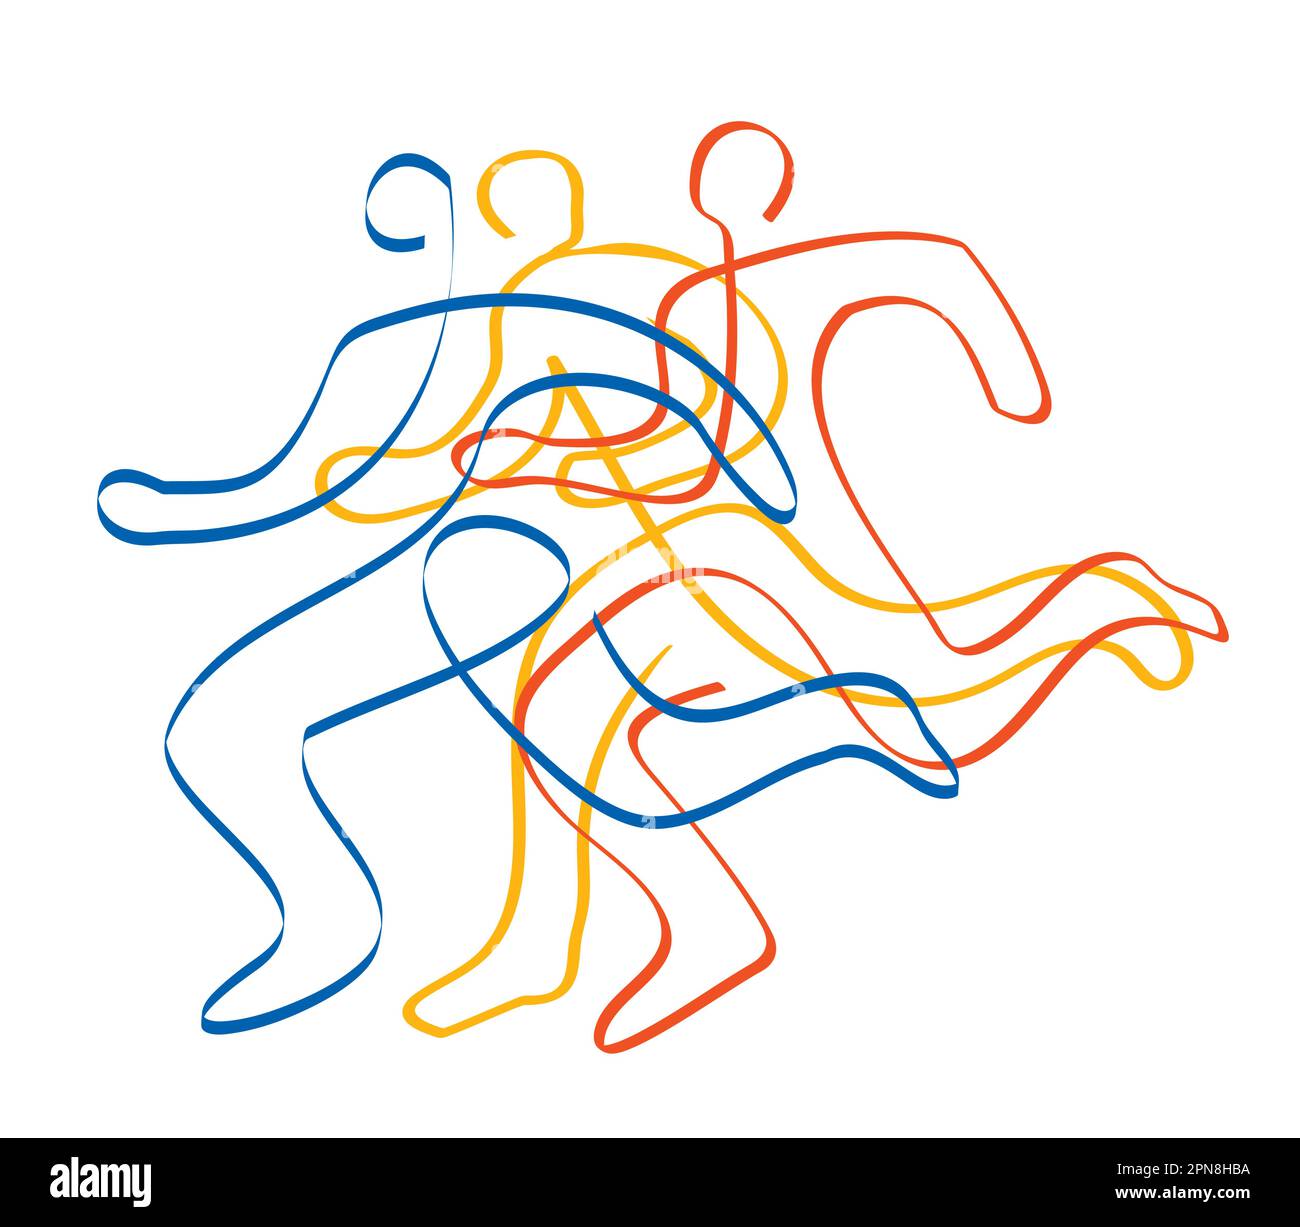 Corsa, maratona, jogging, line art stilizzato. Illustrazione stilizzata di tre corse. Disegno a linea continua. Illustrazione Vettoriale